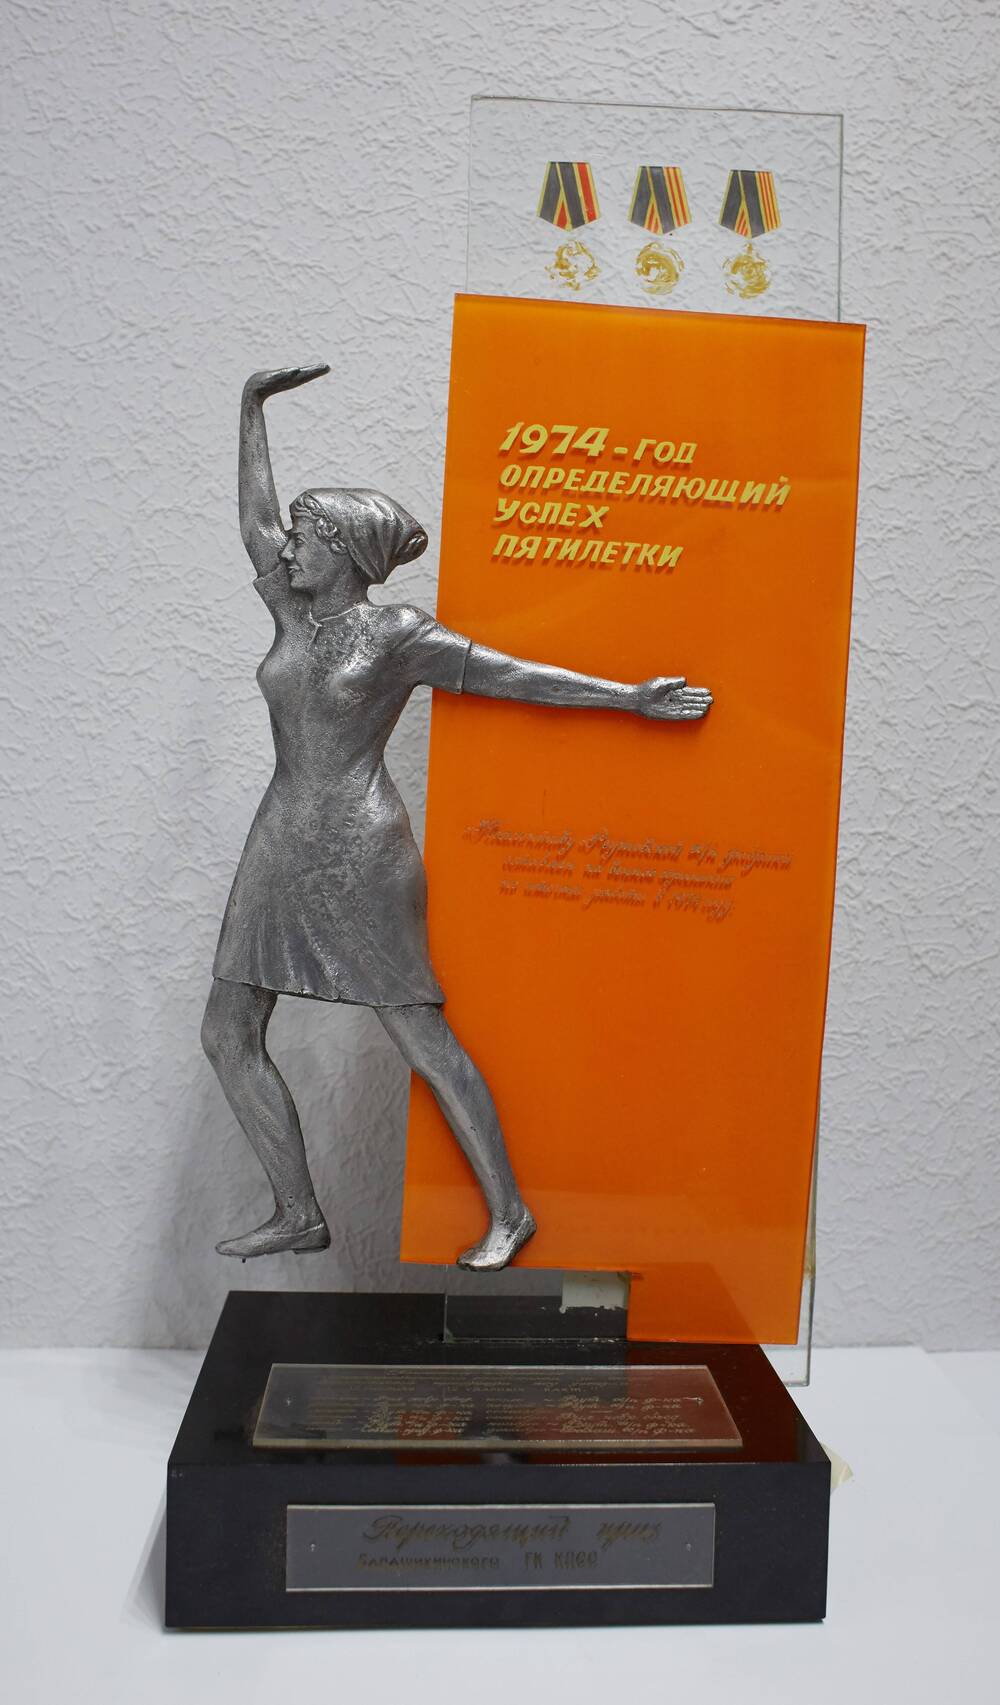 Приз  коллективу-победителю   в  соц. соревновании по итогам работы в 1974 г.